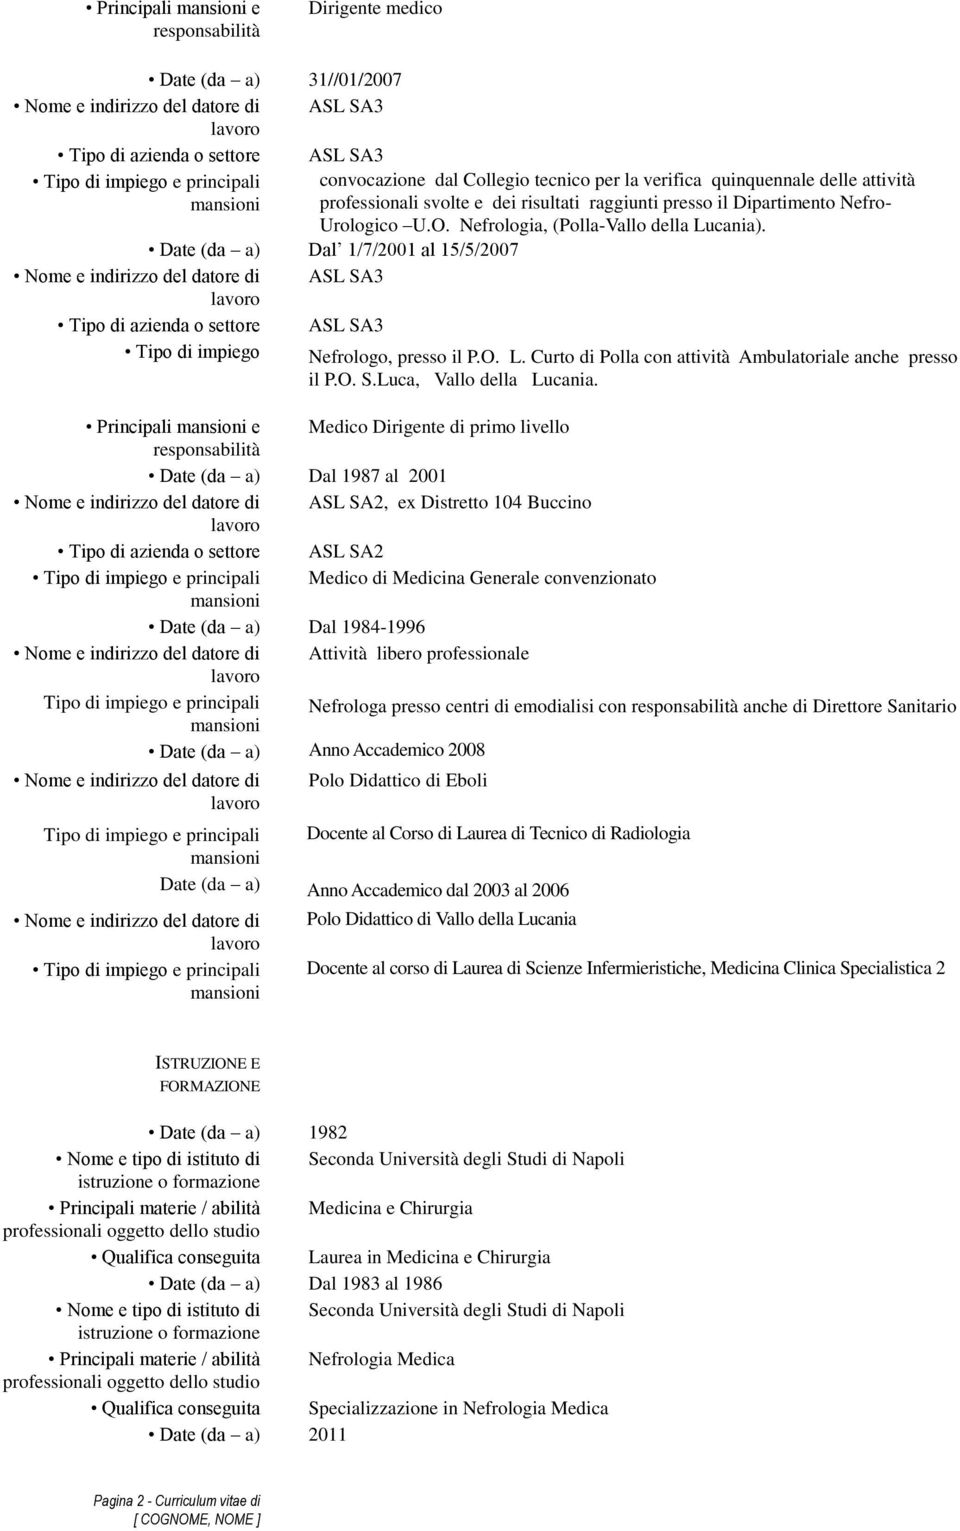 Date (da a) Dal 1/7/2001 al 15/5/2007 ASL SA3 Tipo di azienda o settore ASL SA3 Tipo di impiego Nefrologo, presso il P.O. L. Curto di Polla con attività Ambulatoriale anche presso il P.O. S.Luca, Vallo della Lucania.